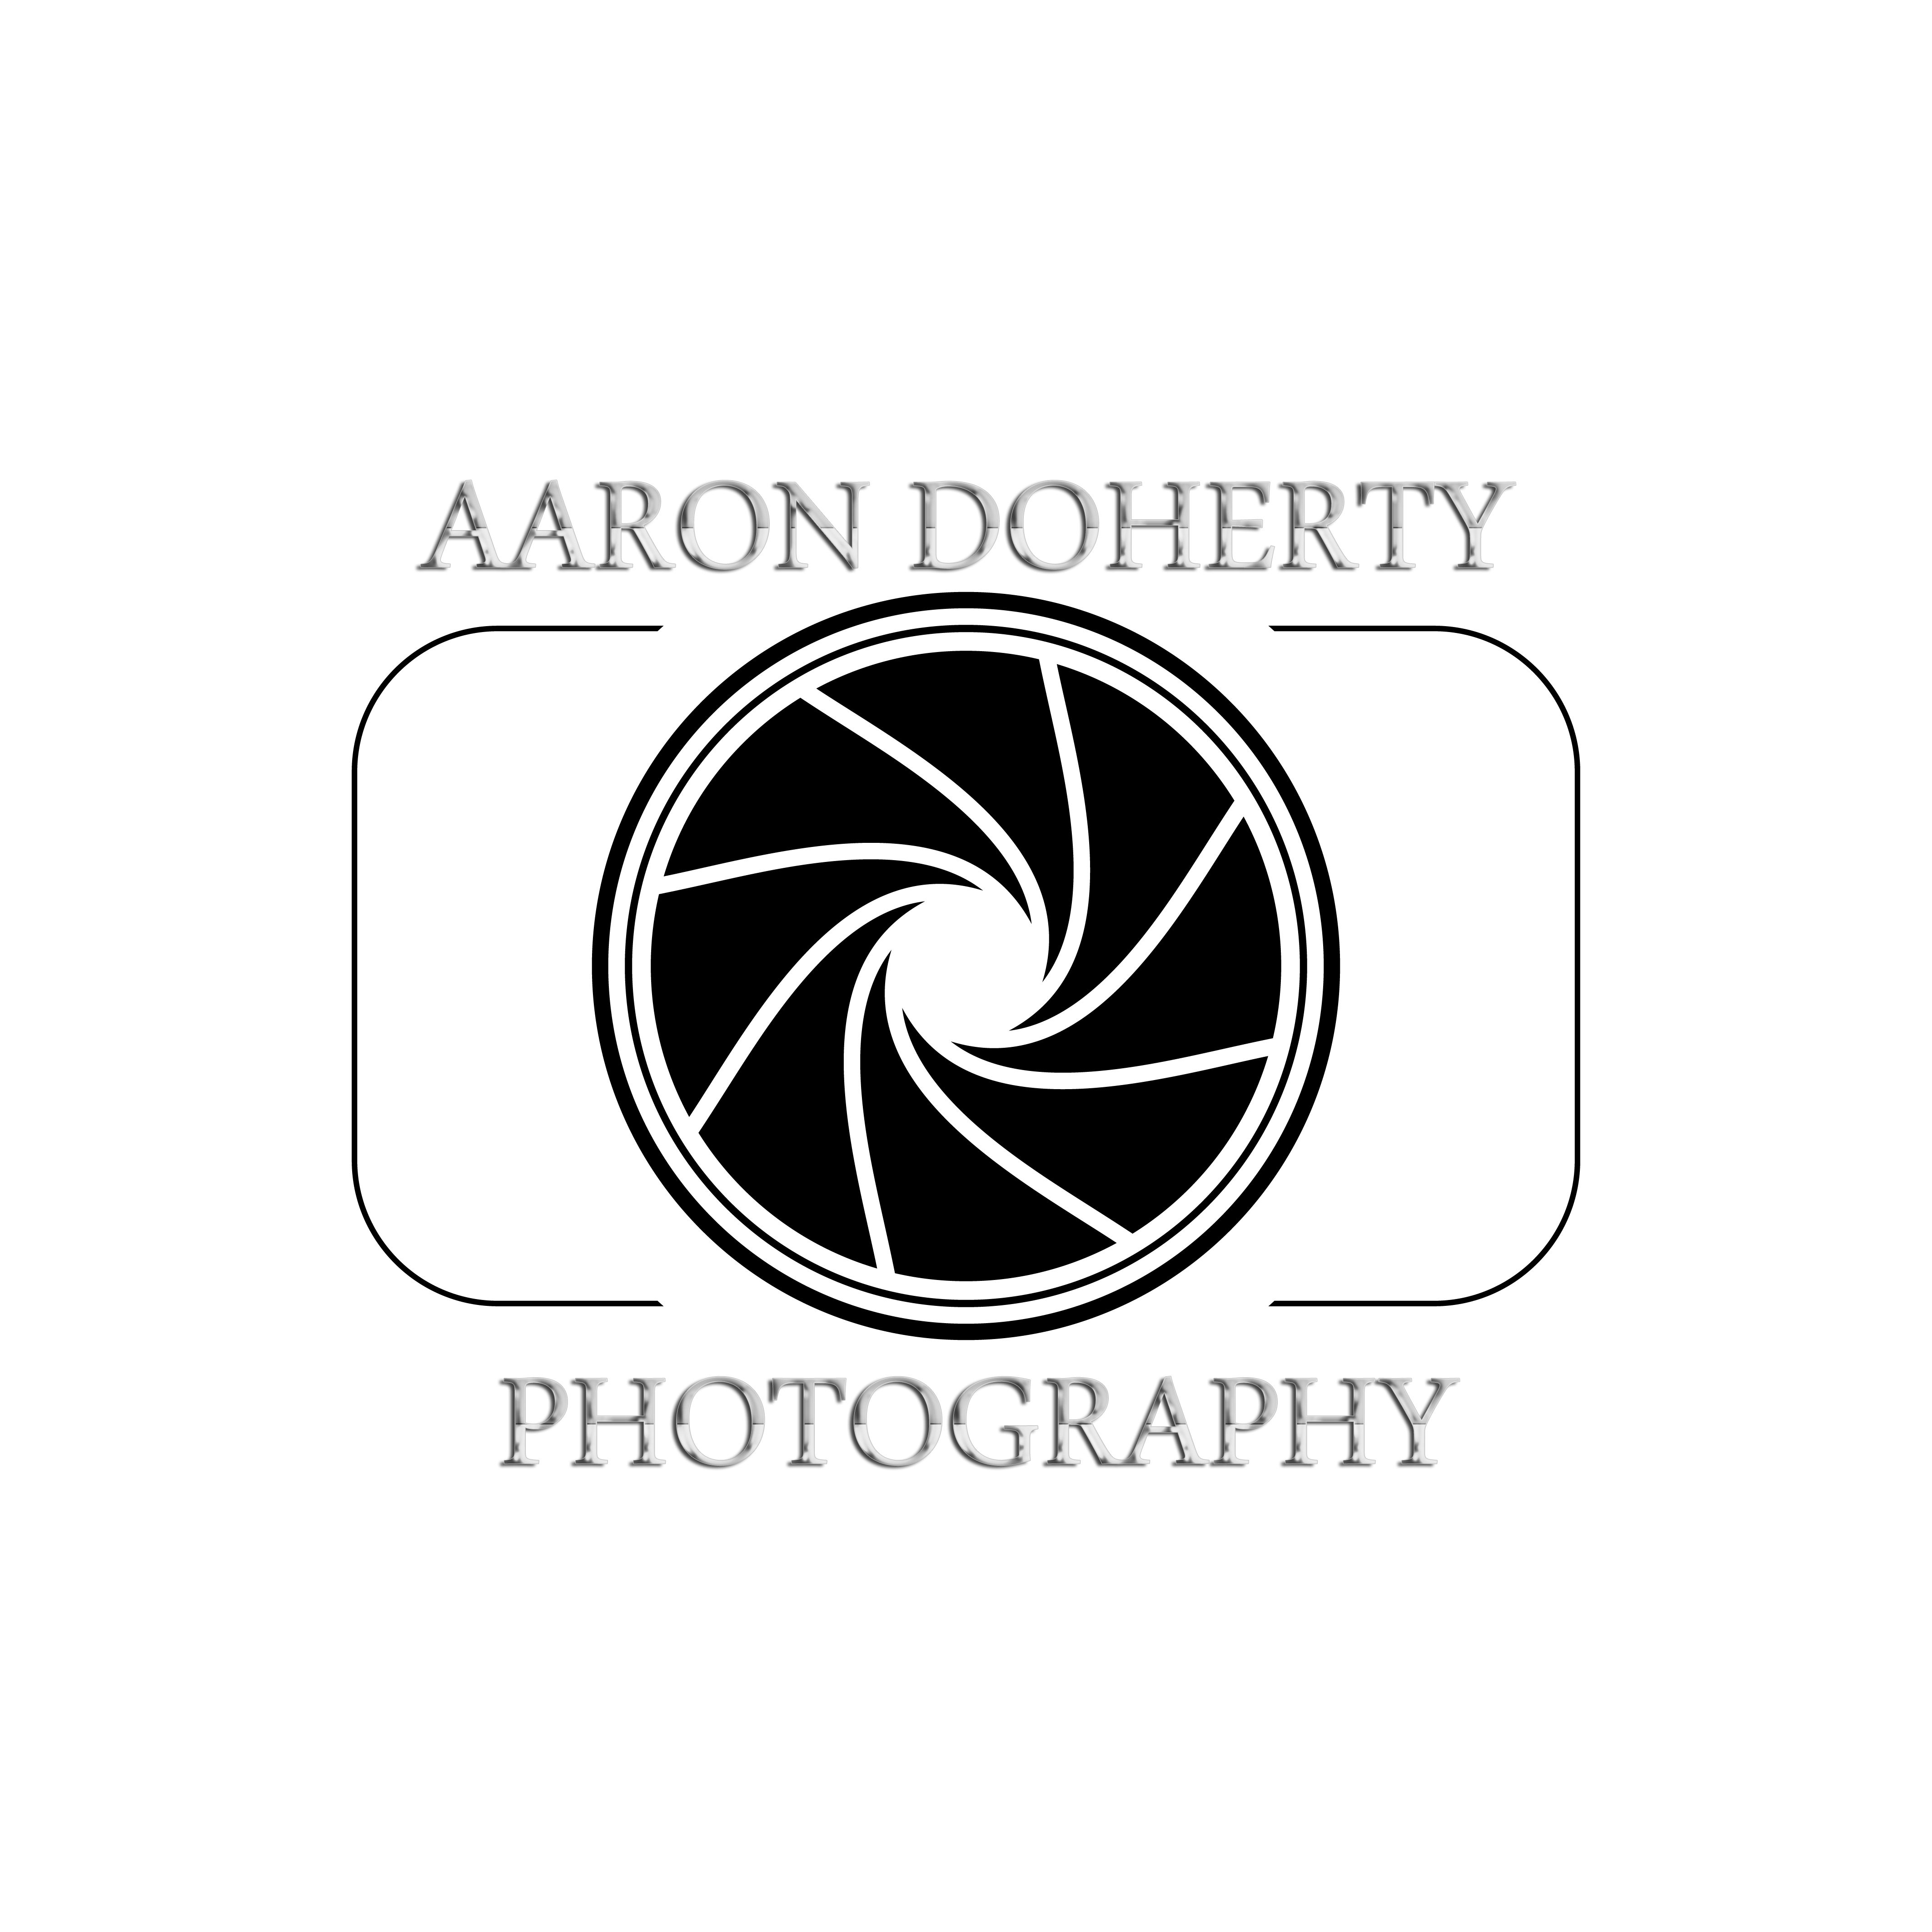 Aaron Doherty Photography